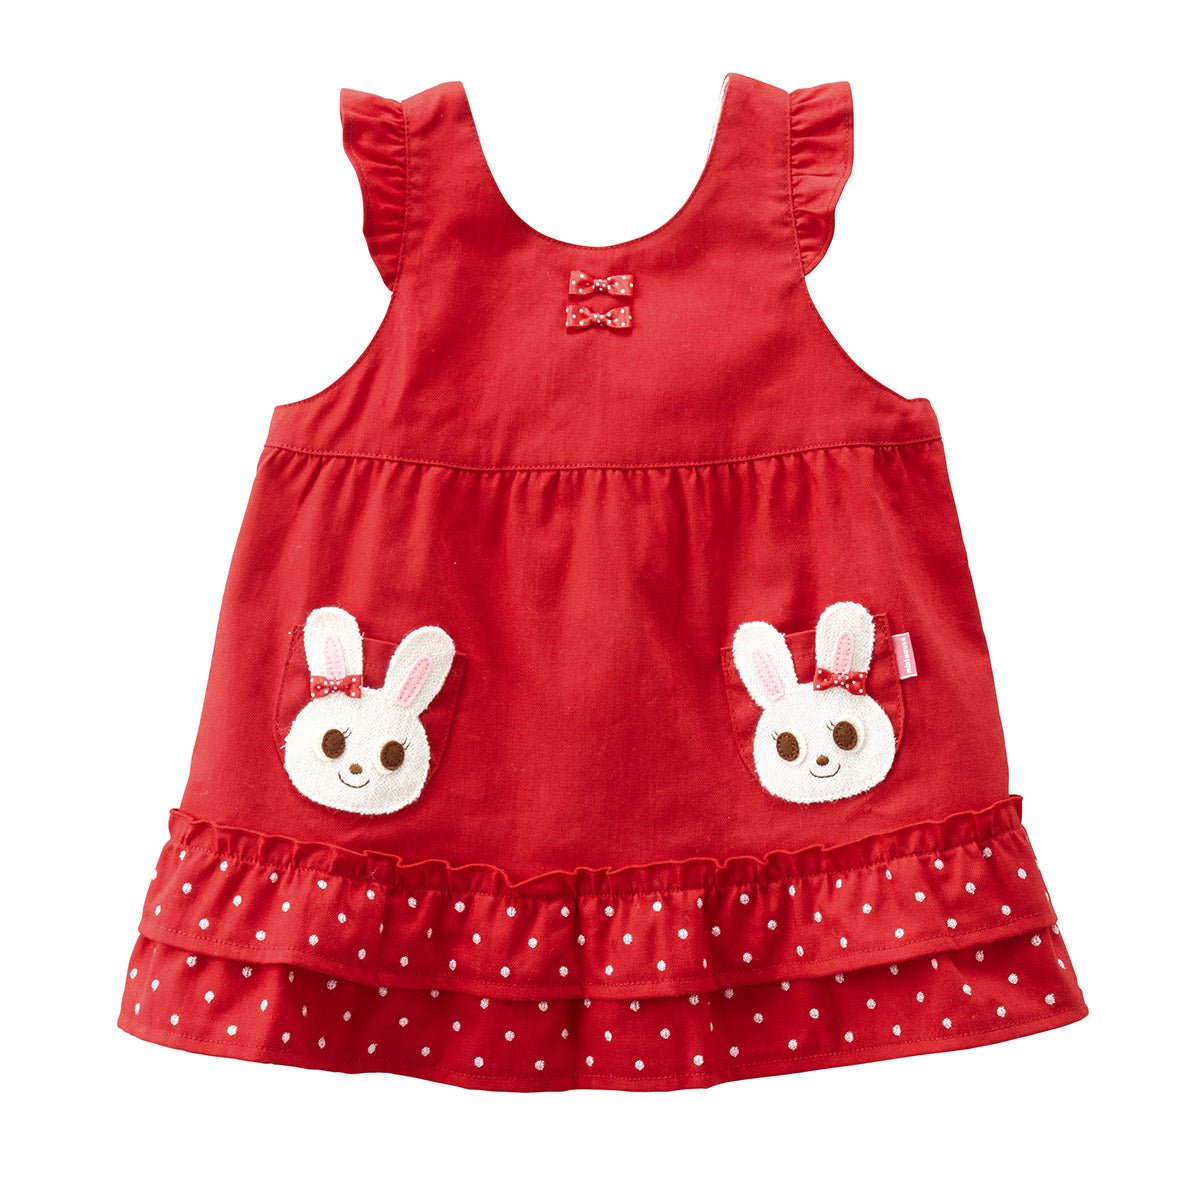 Twin Bunny Denim Dress - 13-1801-565-02-80